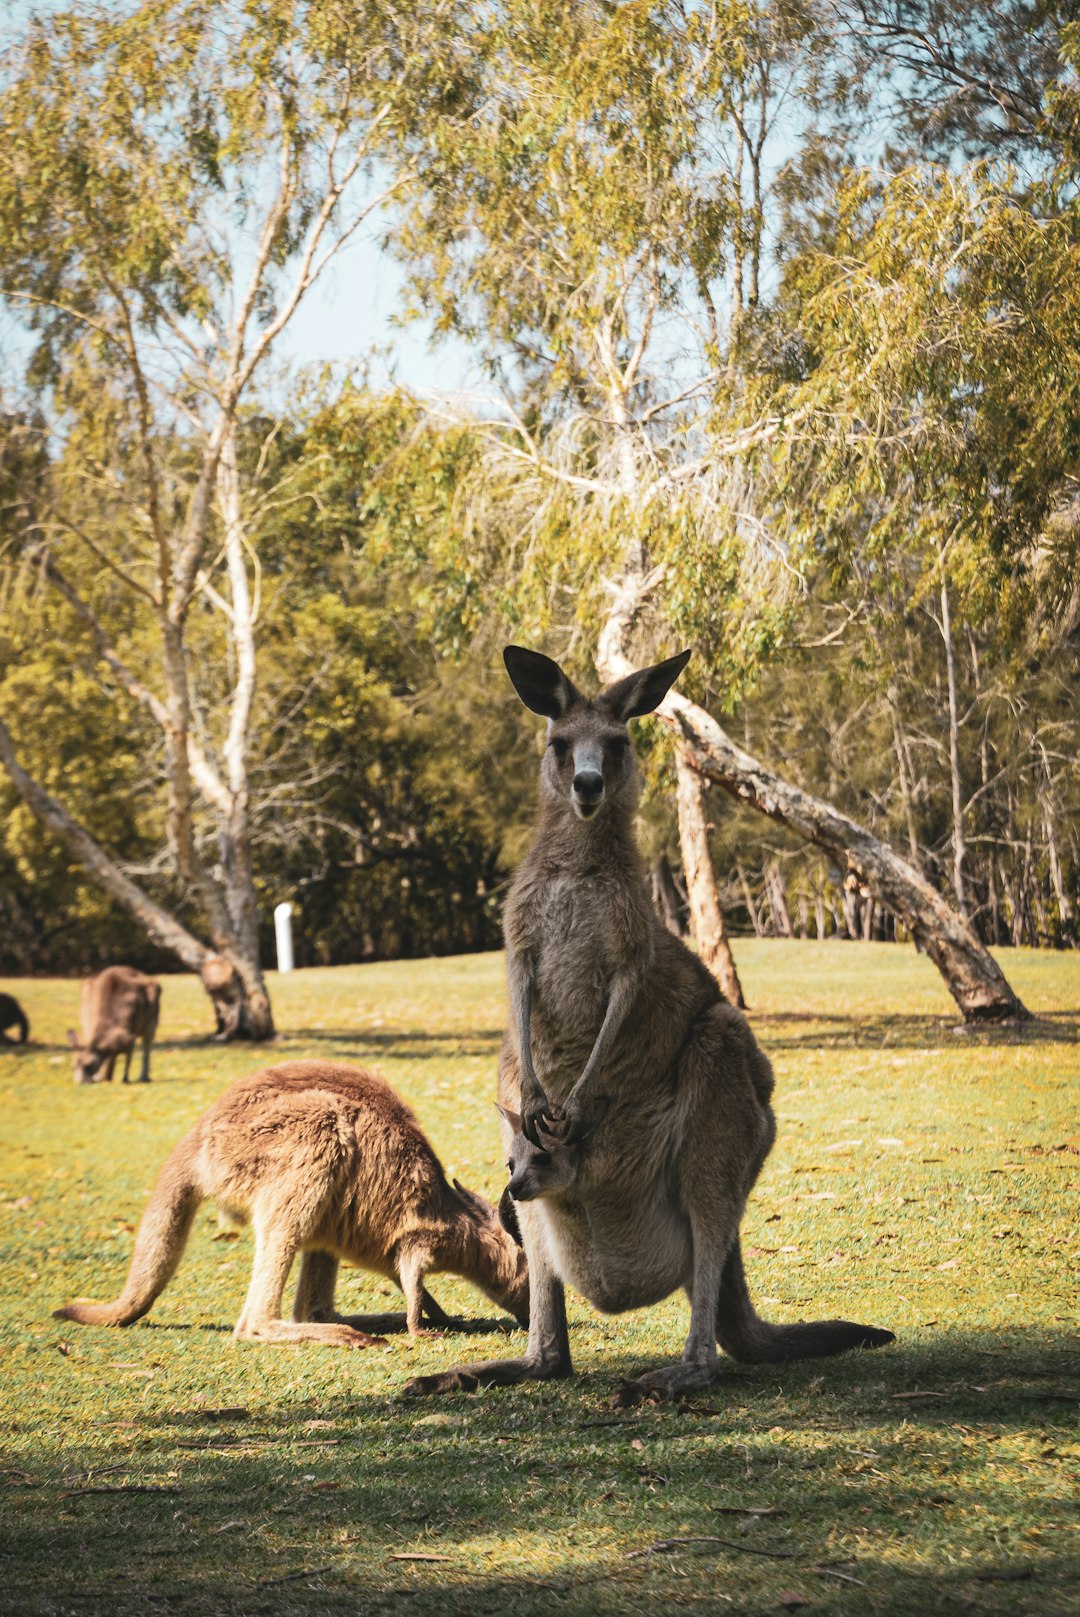  kangaroo standing on green grass field during daytime kangaroo